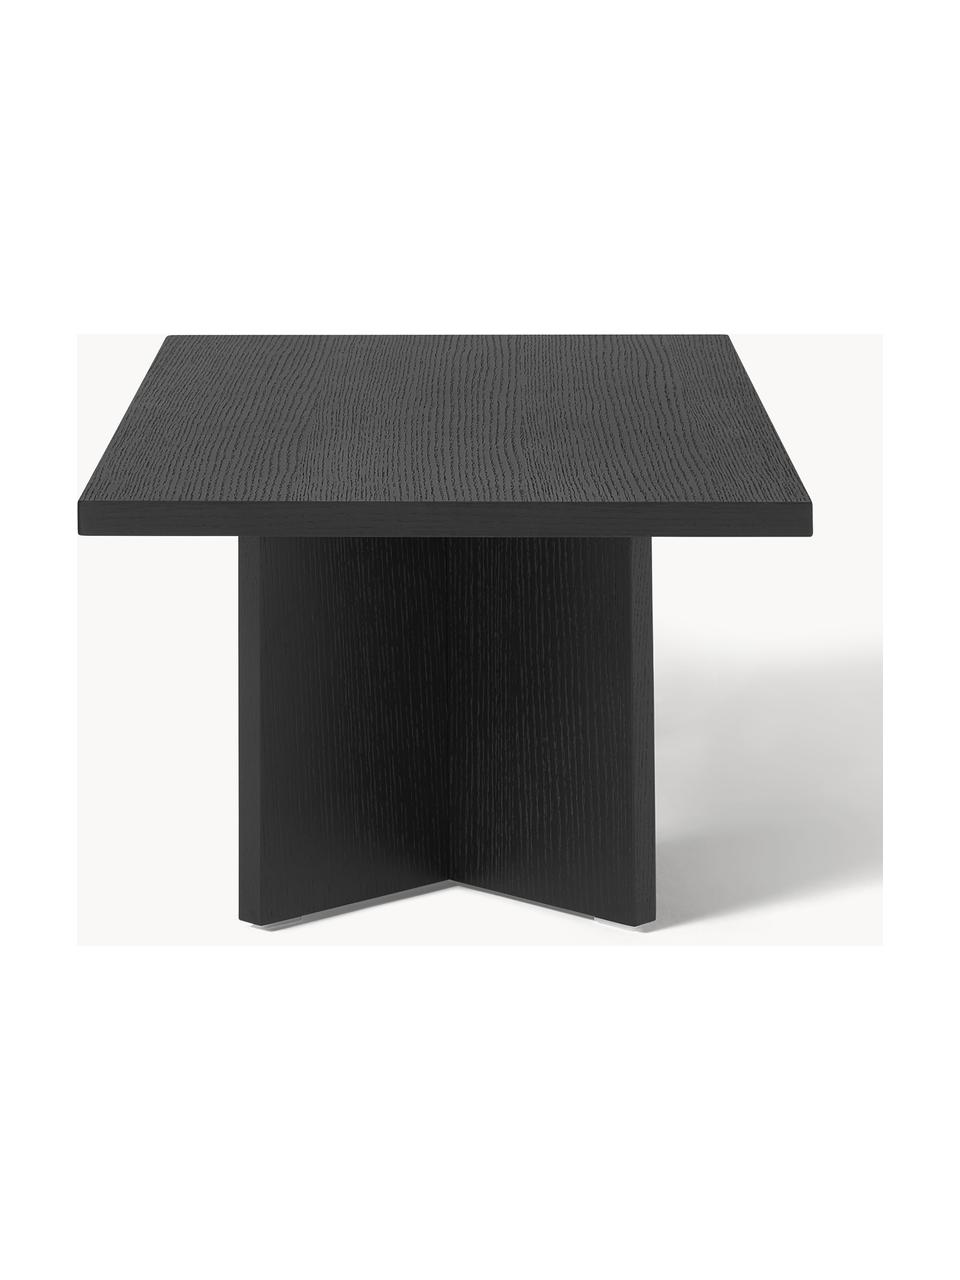 Dřevěný konferenční stolek Toni, Dřevovláknitá deska střední hustoty (MDF) s lakovaná dýha z ořechového dřeva

Tento produkt je vyroben z udržitelných zdrojů dřeva s certifikací FSC®., Lakovaná černá dubová dýha, Š 100 cm, H 55 cm